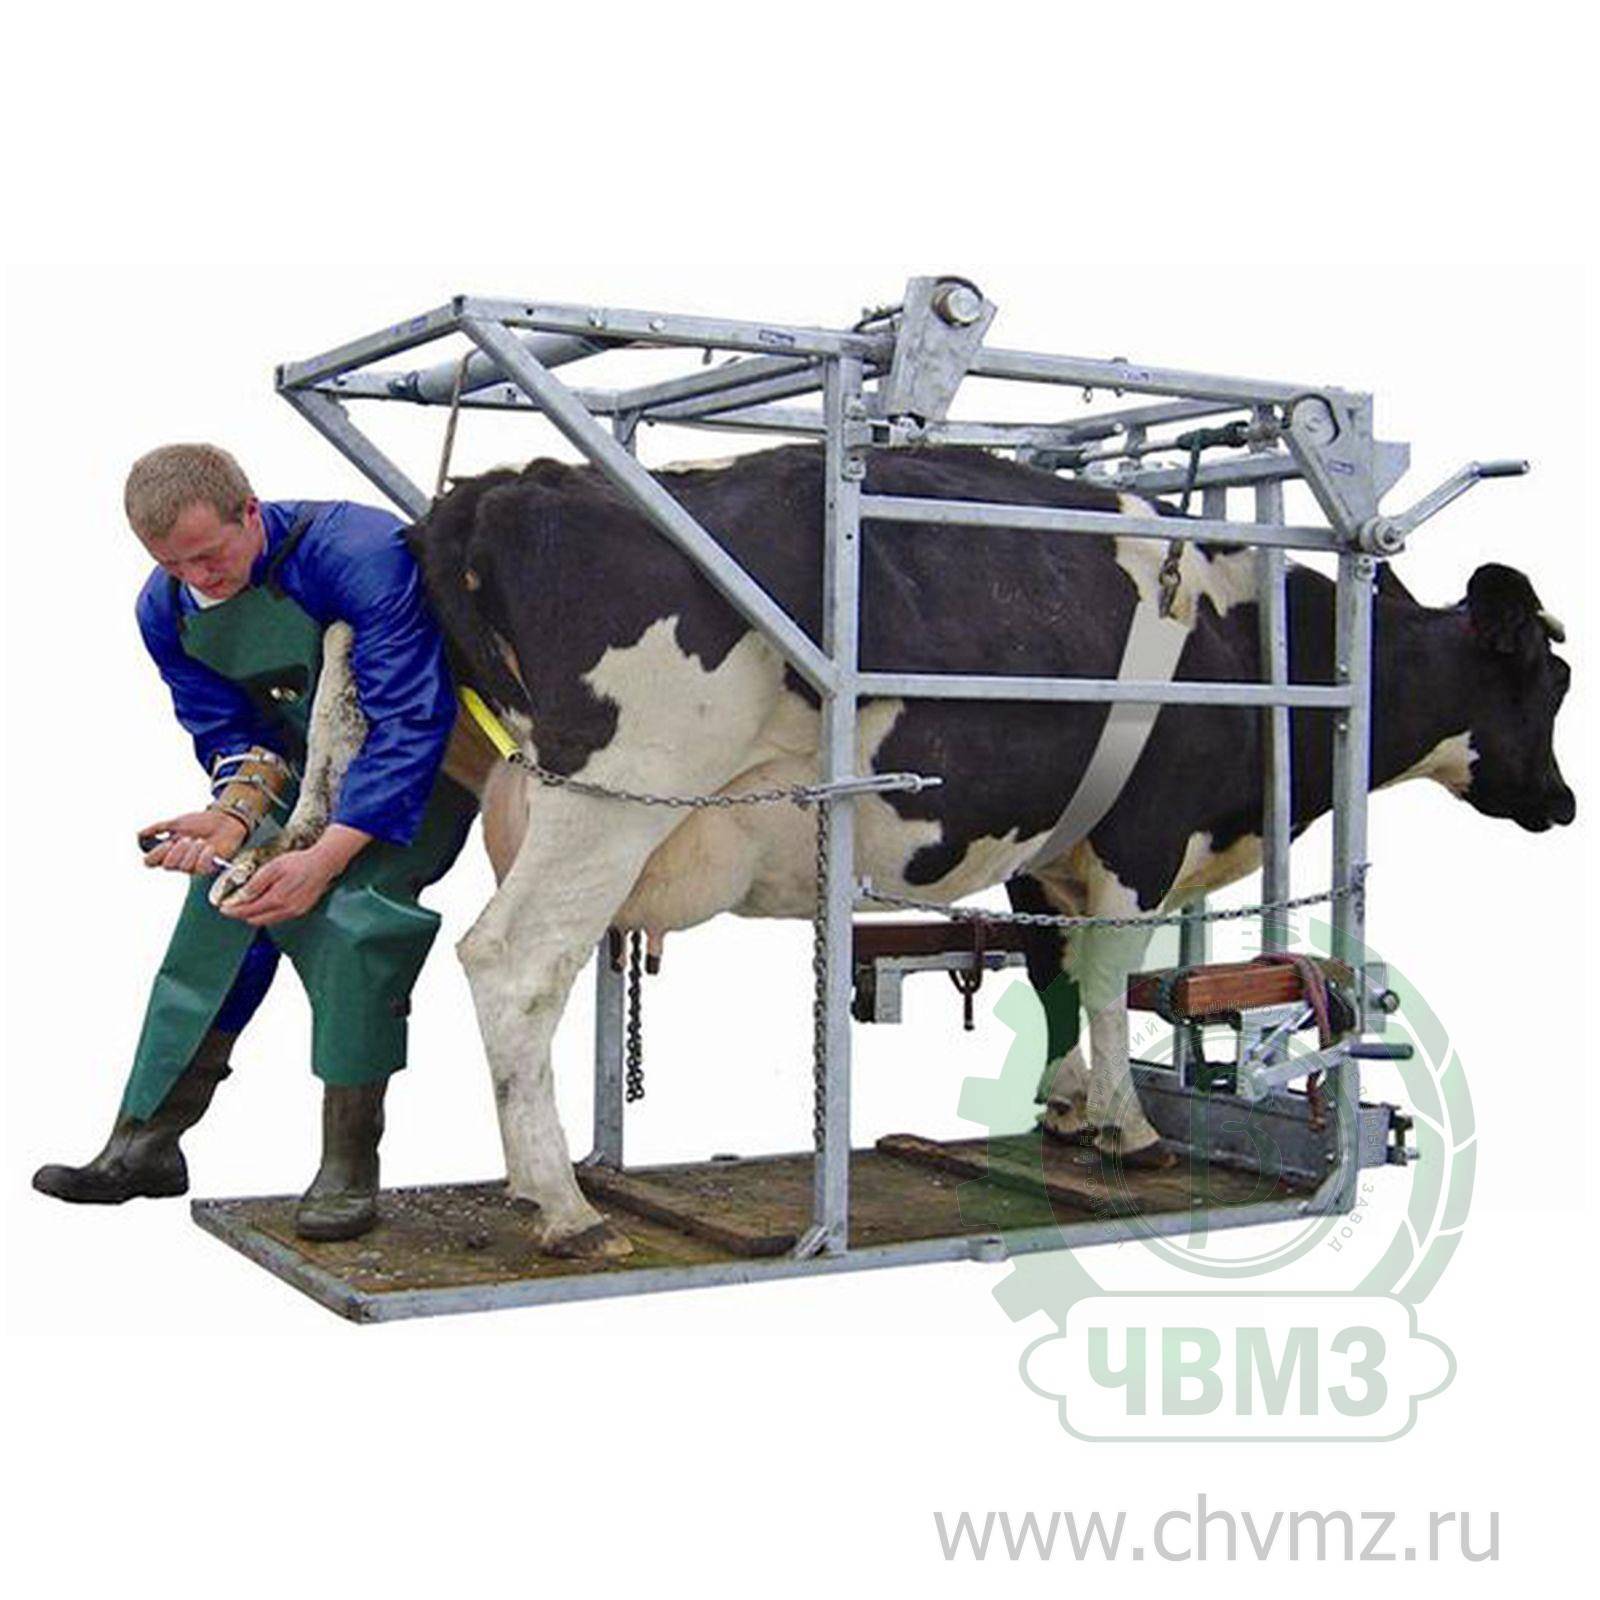 Станок для ветеринарных процедур и обработки копыт скота - усс-агро